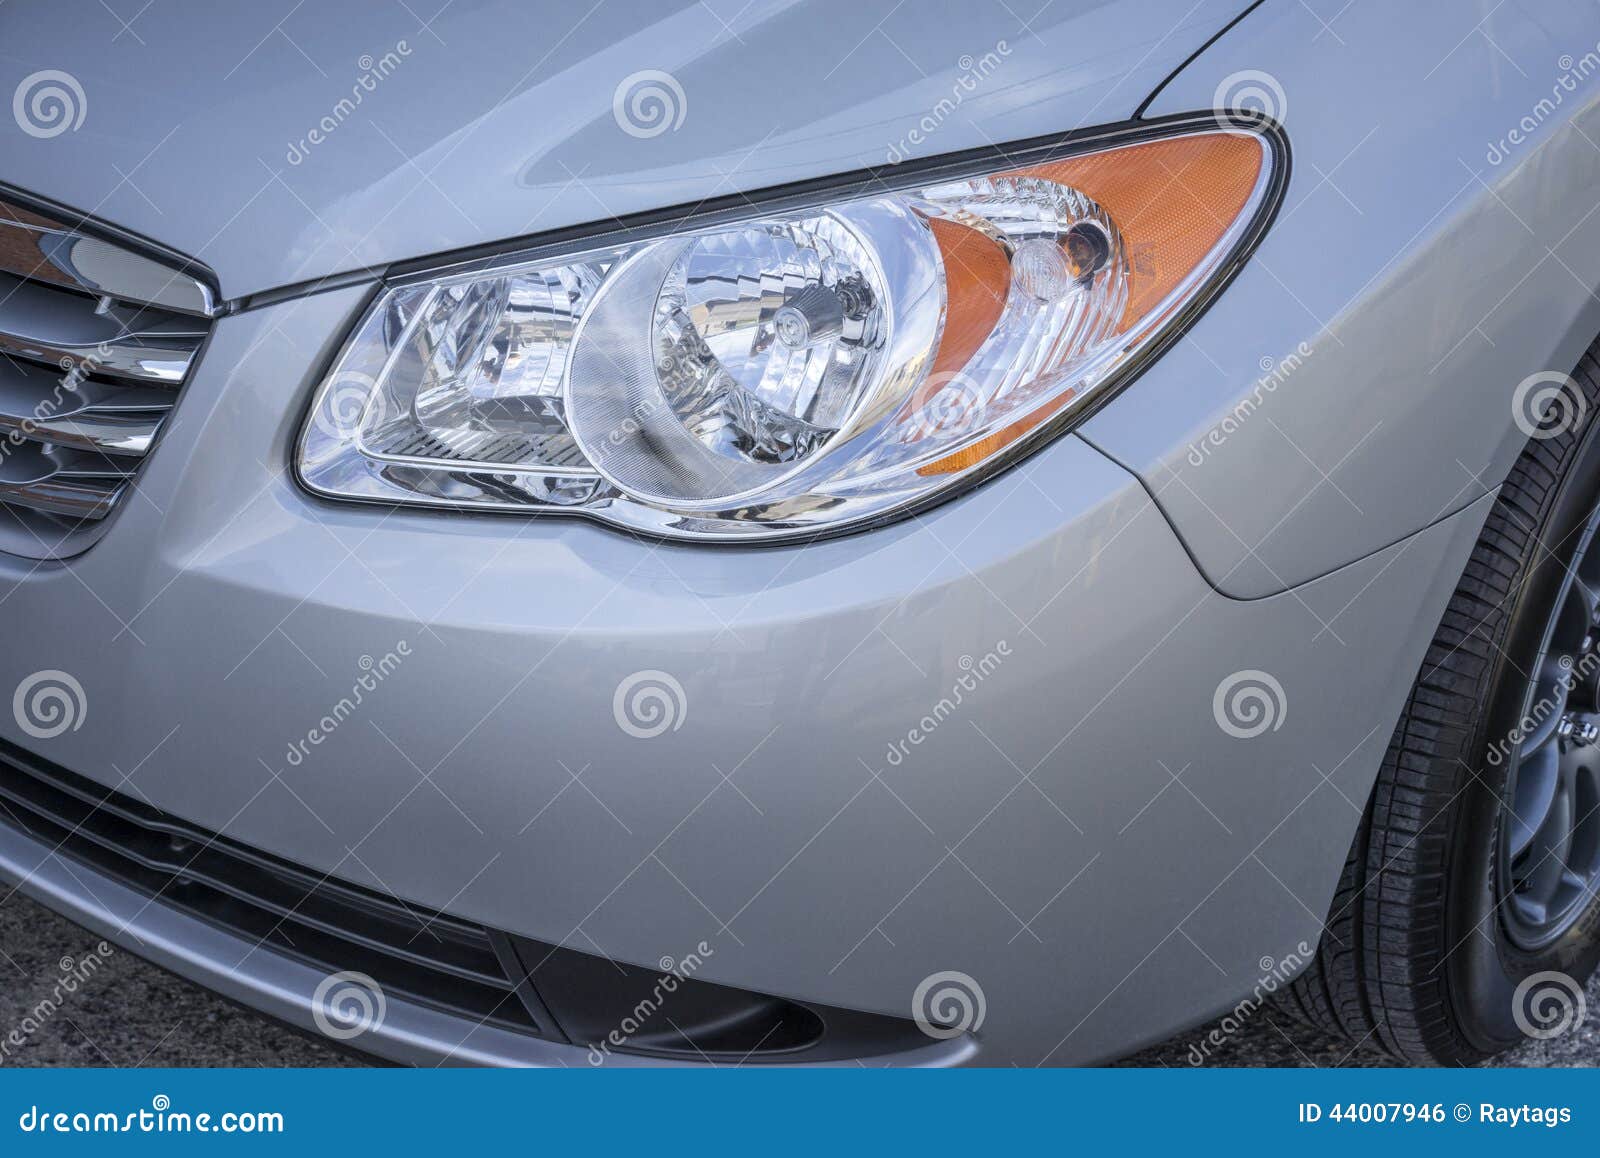 car headlamp